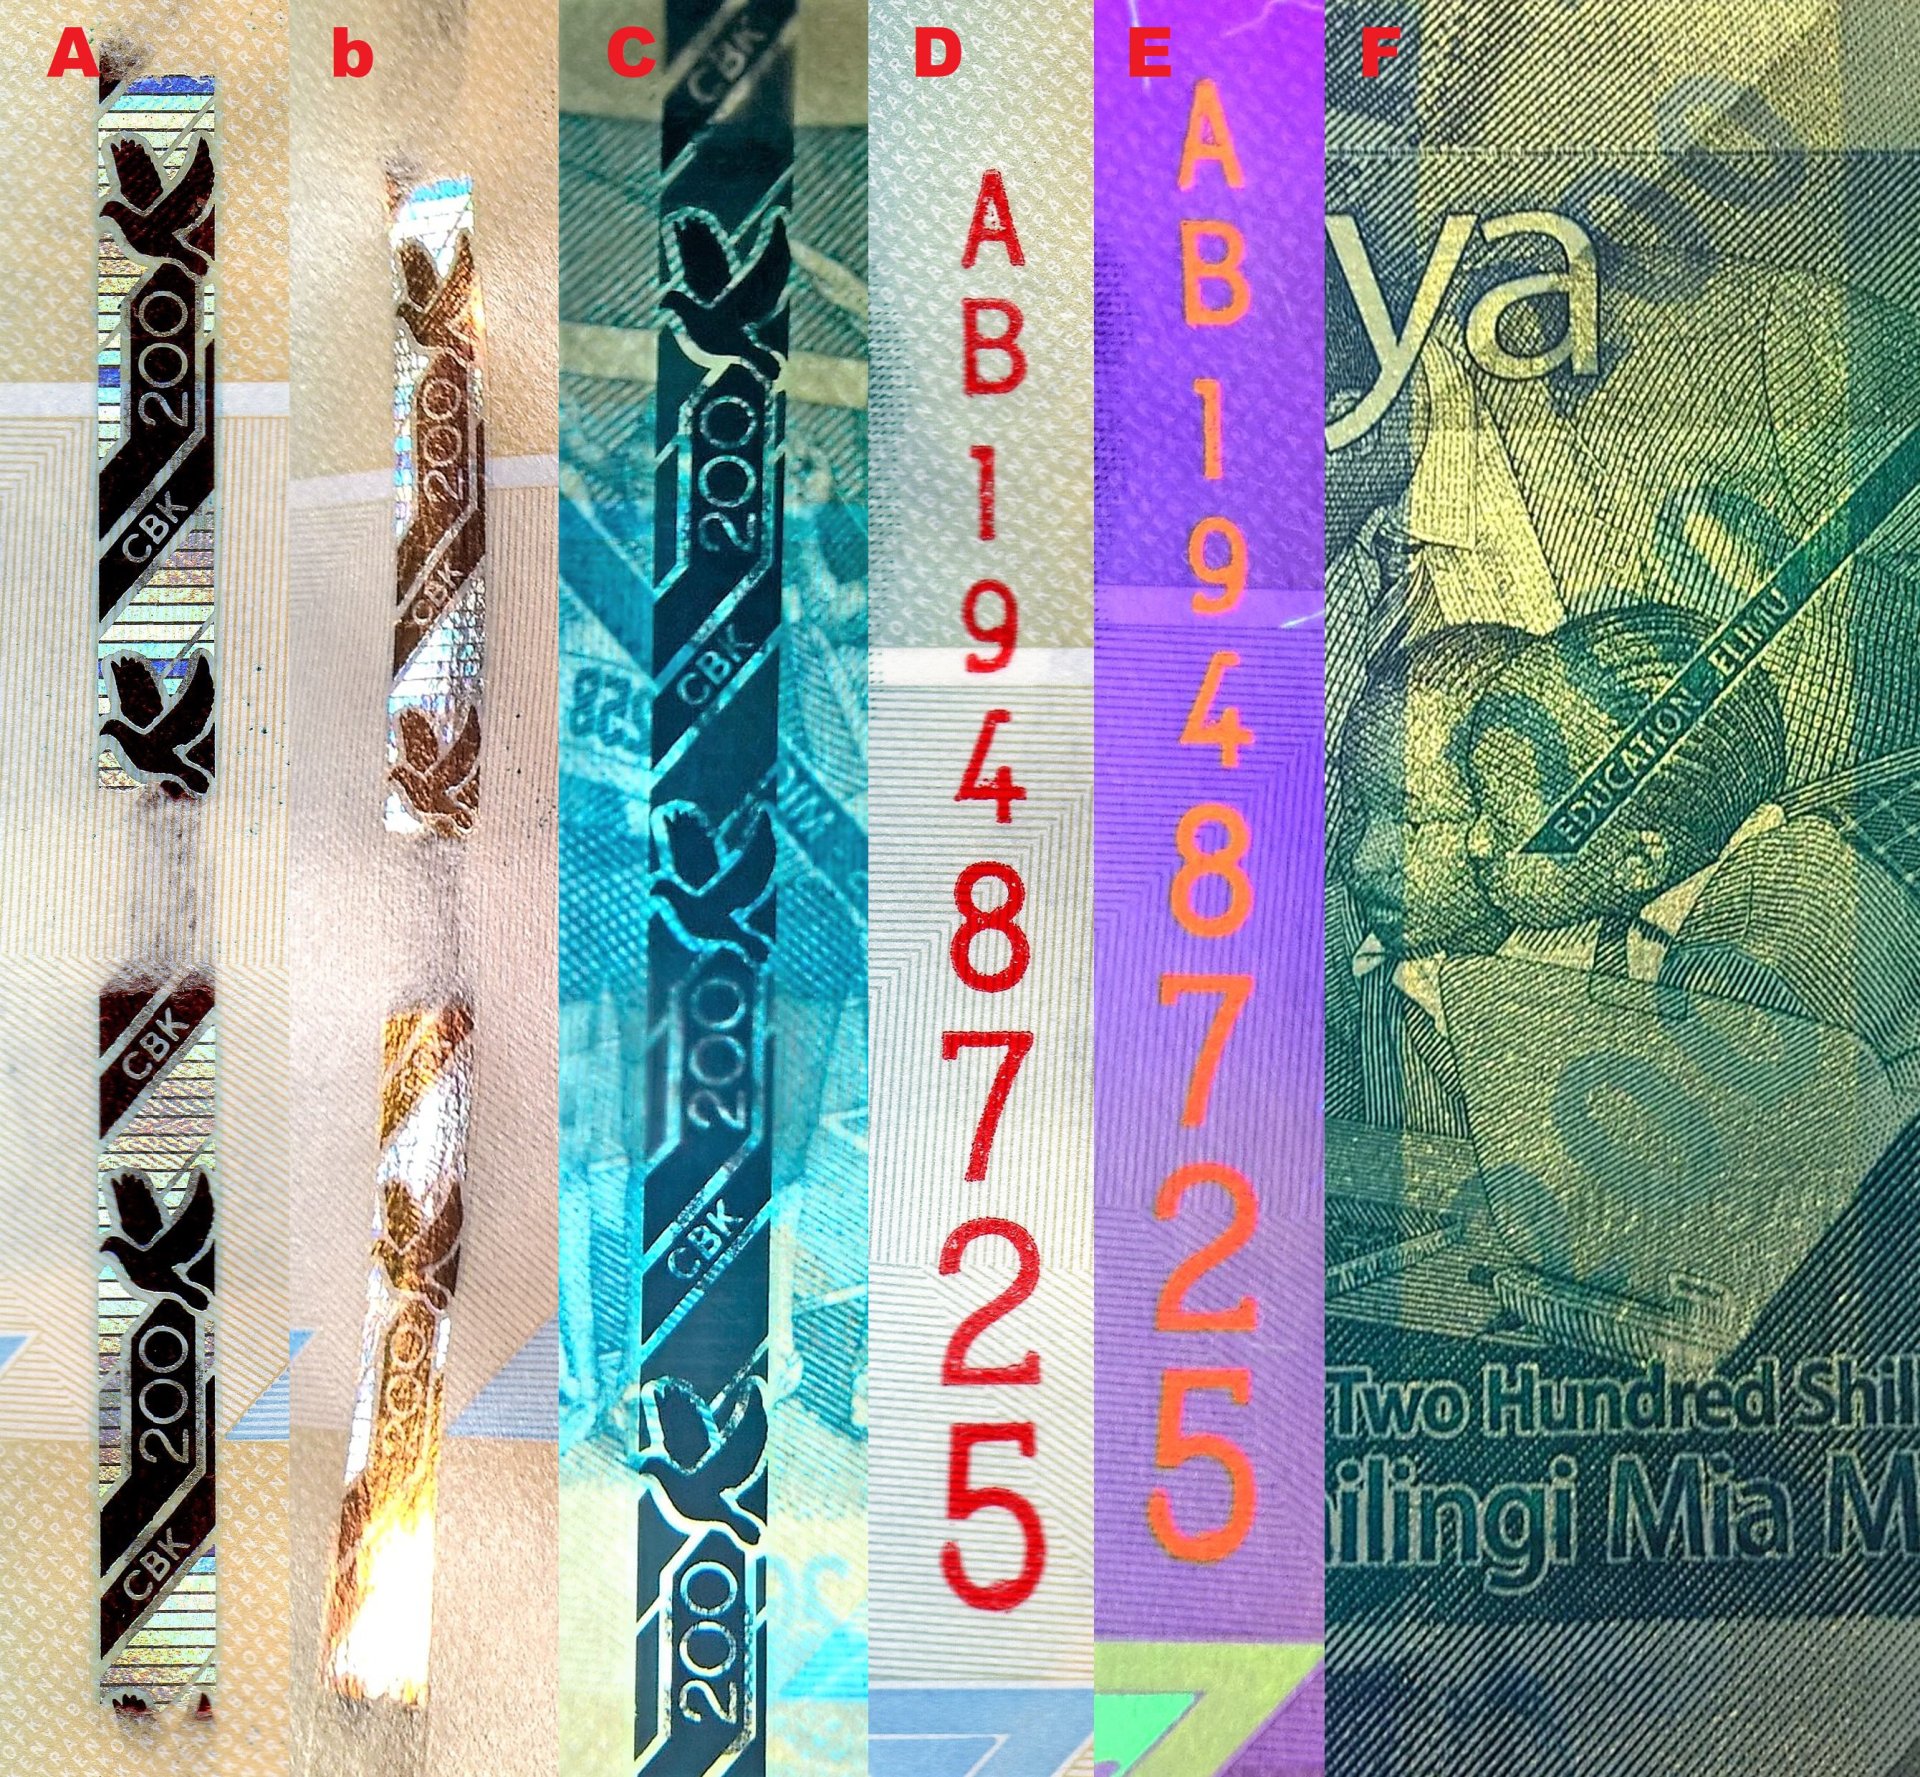 9. A) Bezpečnostní intermitentní proužek B) Změna barvy na kovově měděnou při náklonu bankovky kolem vertikální osy C) V protisvětle se jeví bezpečnostní proužek jako souvislý D) Vertikální ascendentní červené sériové číslo E) Totéž sériové číslo pod UV n